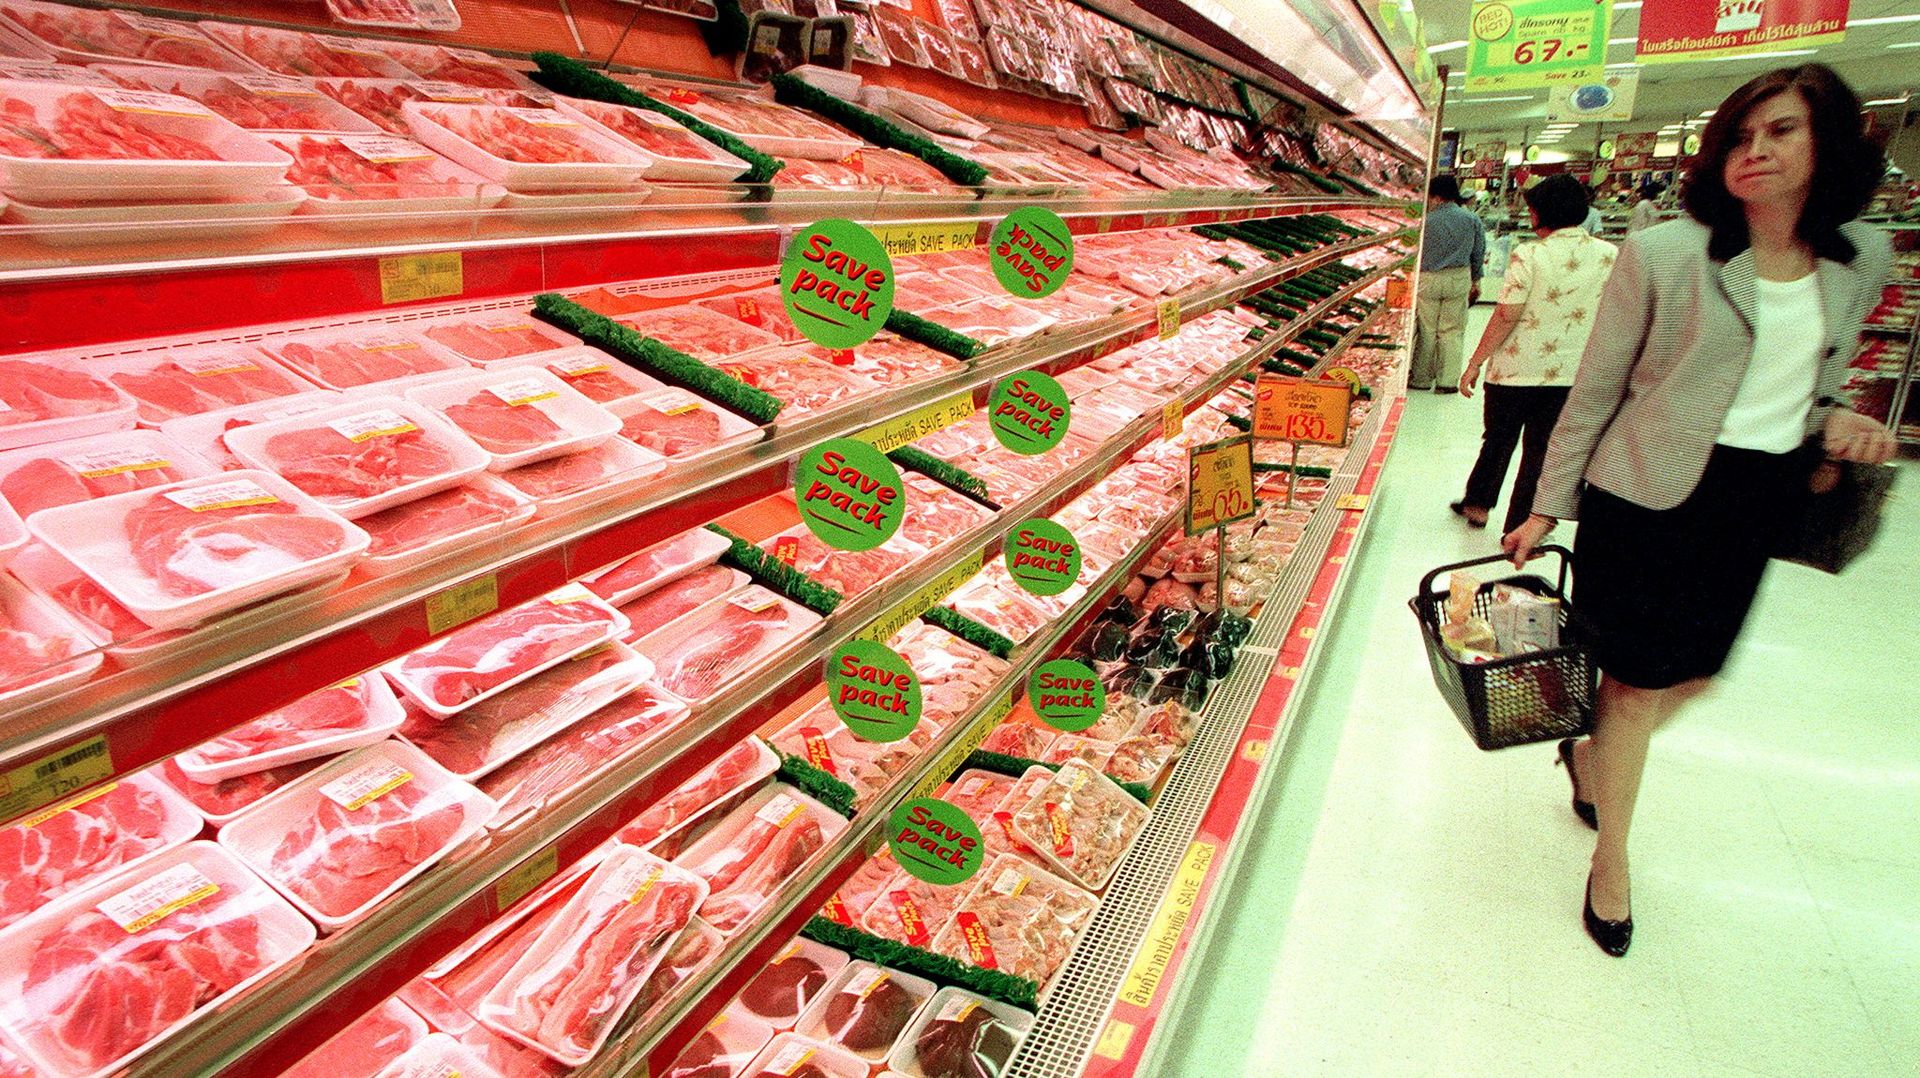 La viande des supermarchés est principalement fournie par des producteurs belges